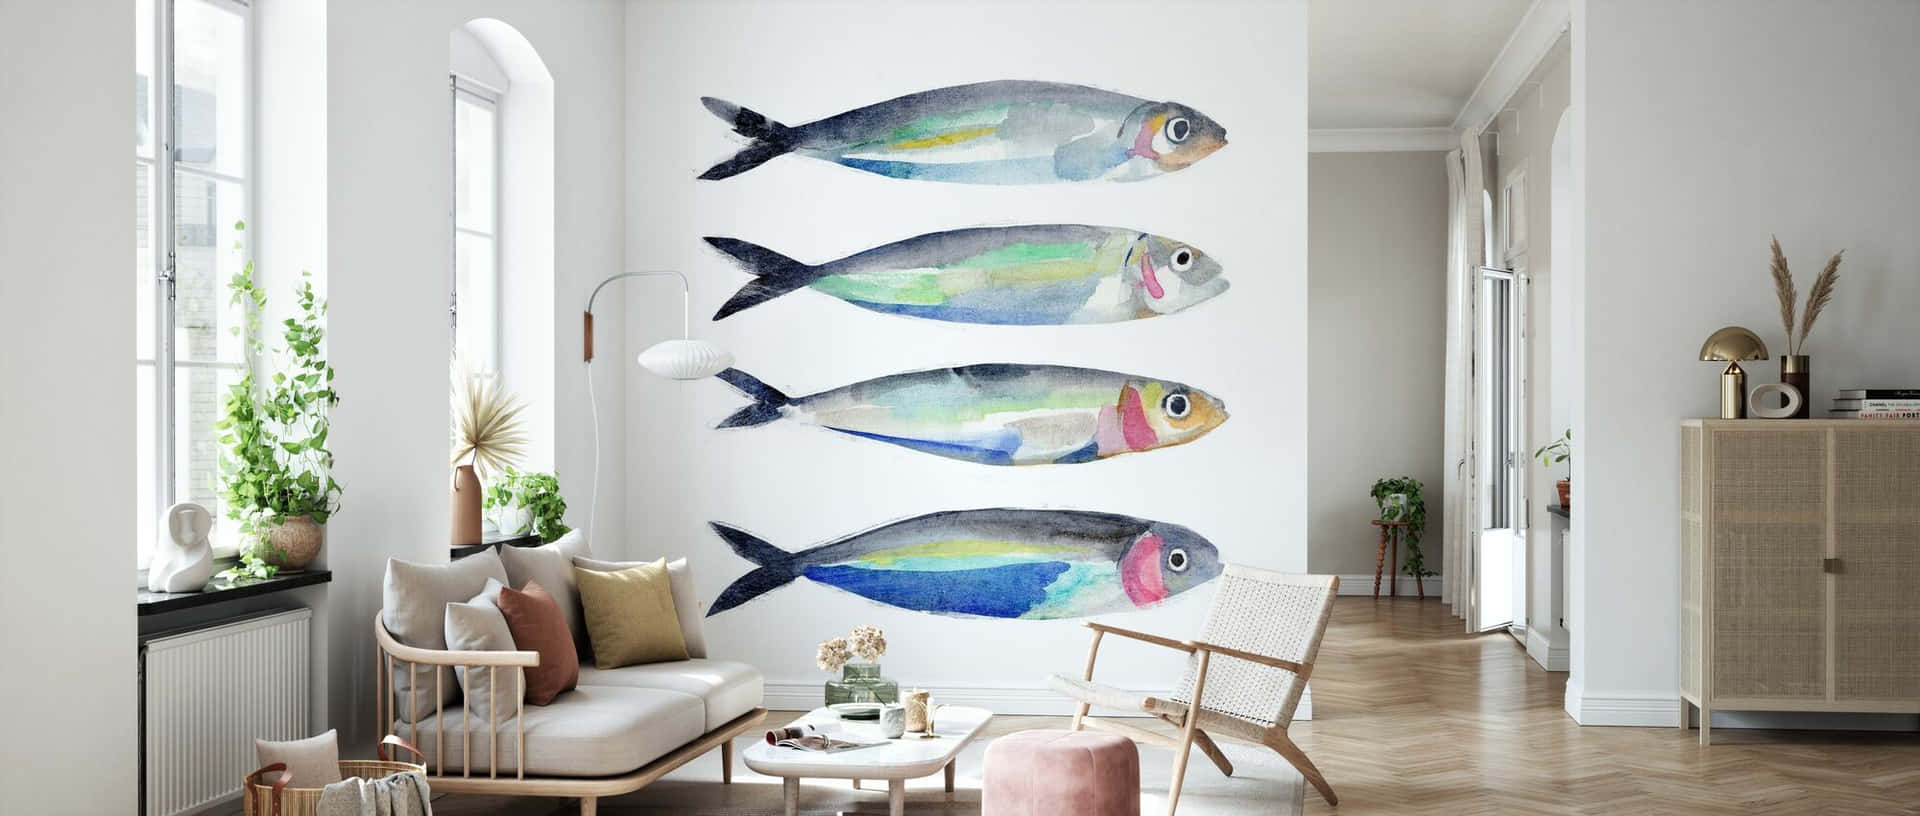 Sardine Art Living Room Decor Wallpaper